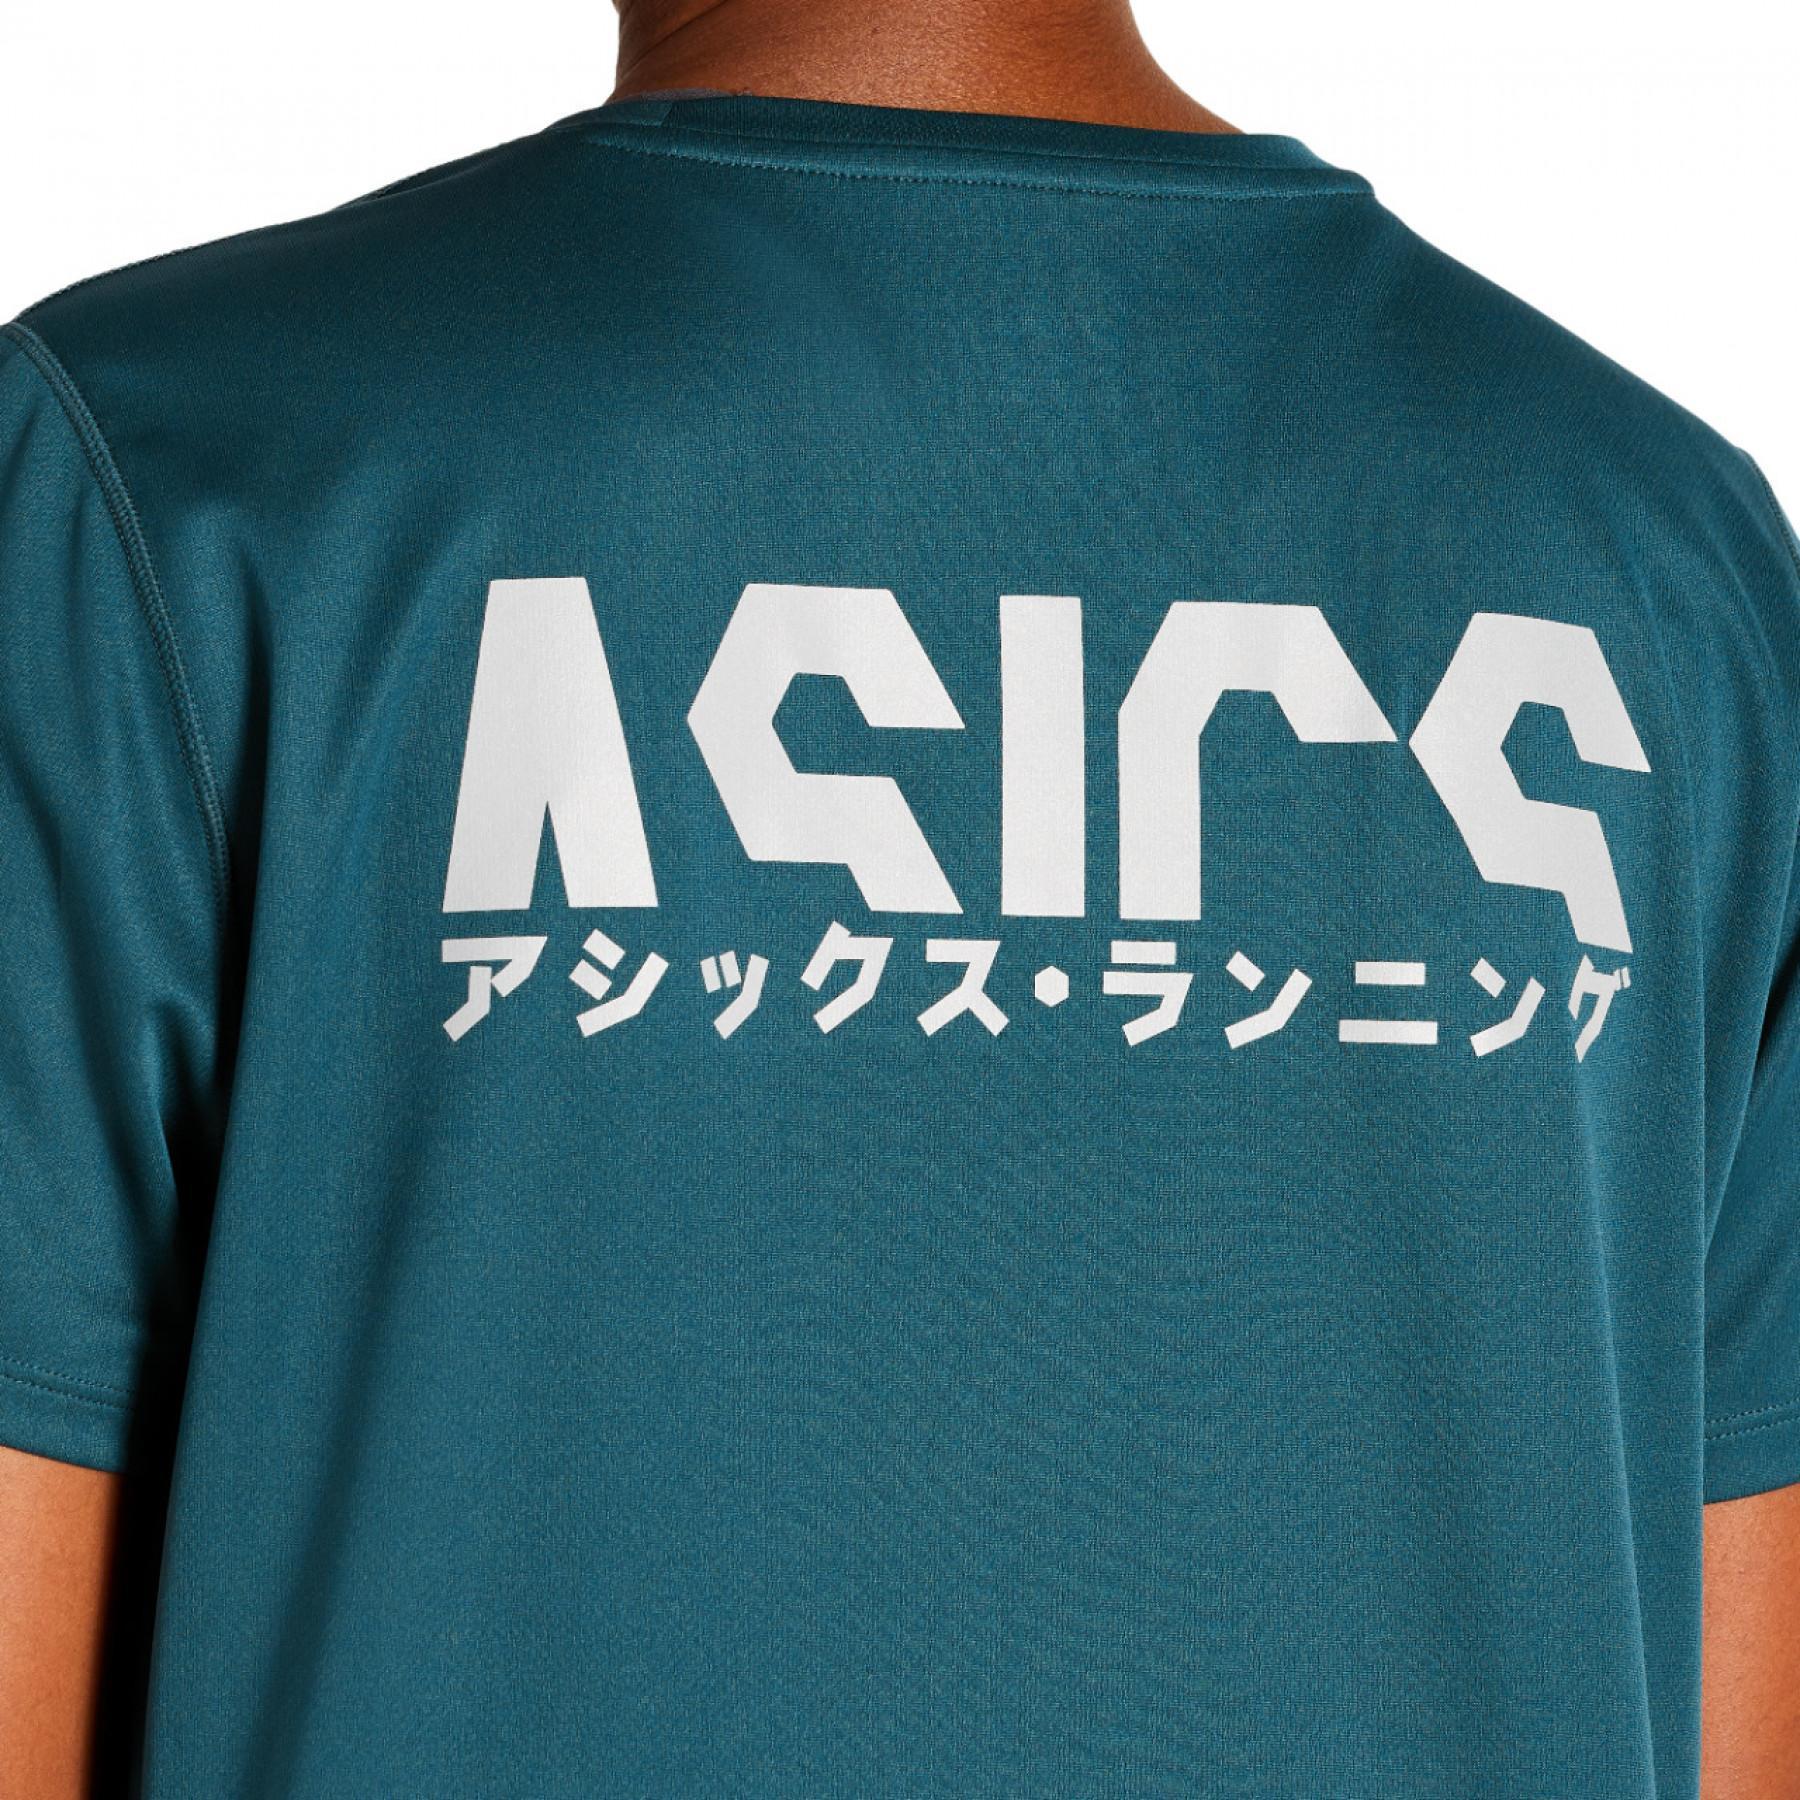 T-shirt vrouw Asics Katakana